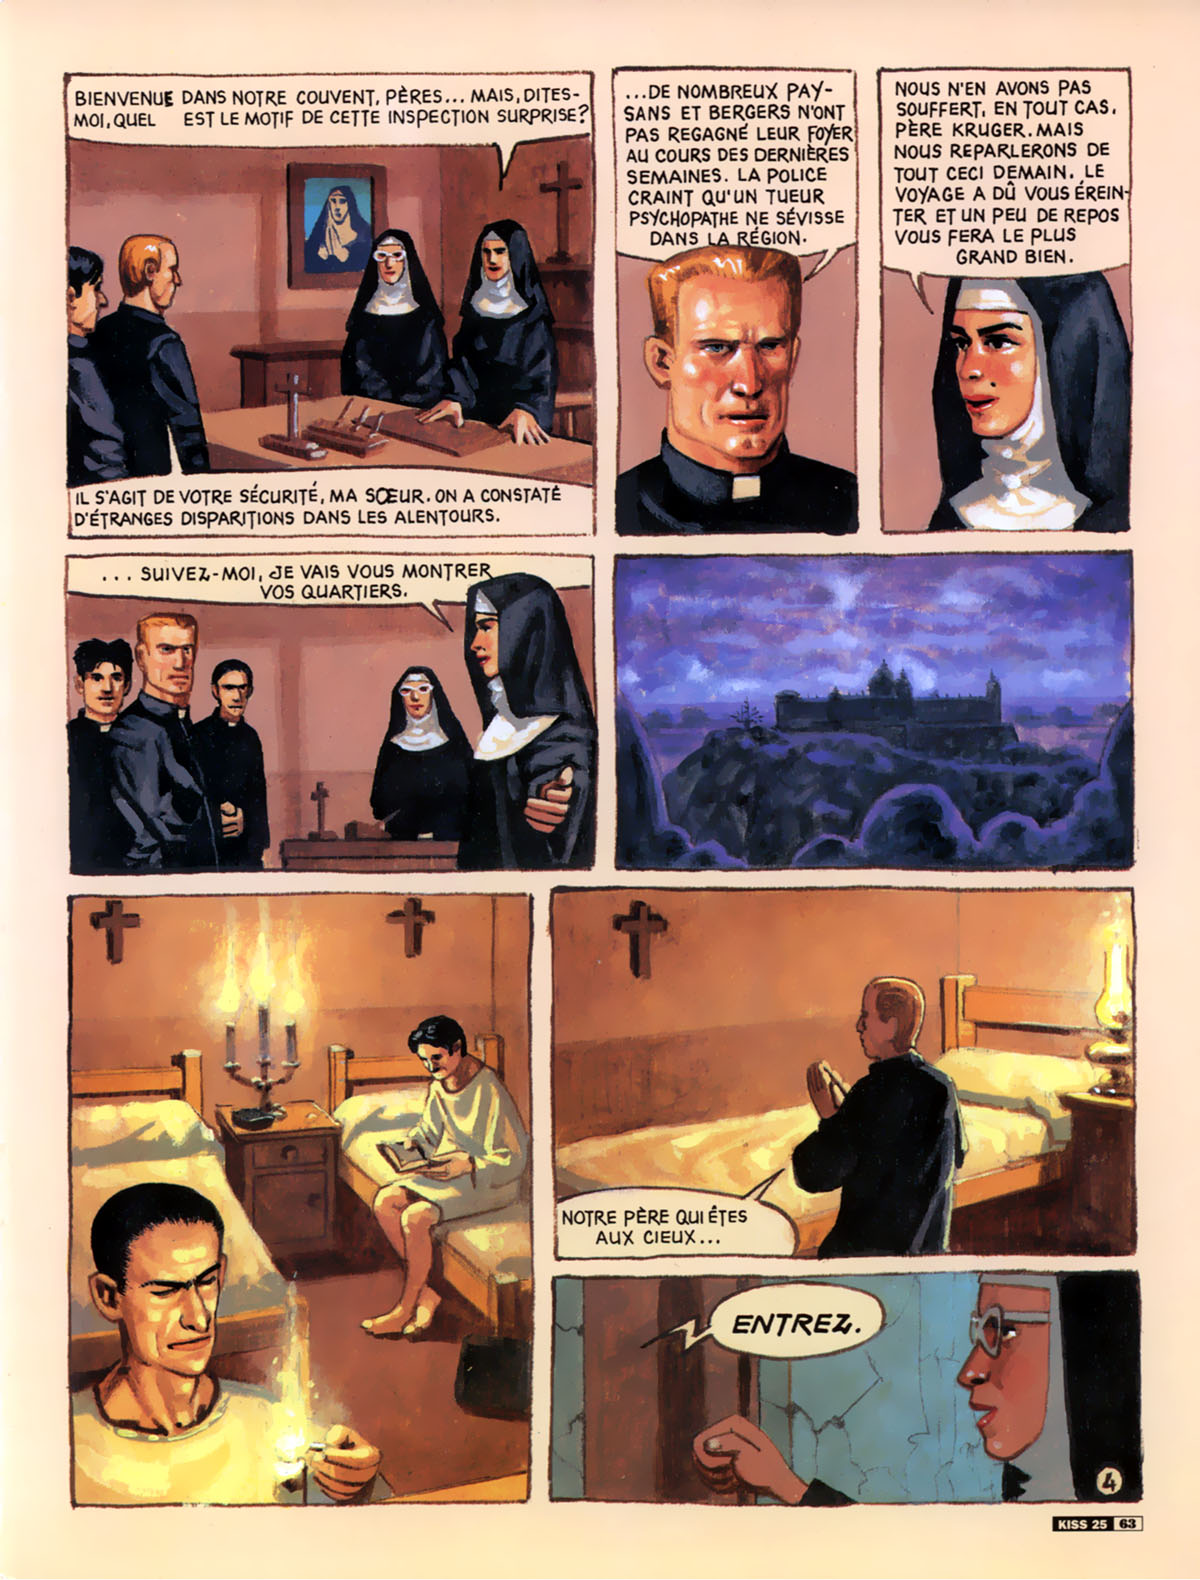 Le couvent infernal numero d'image 43